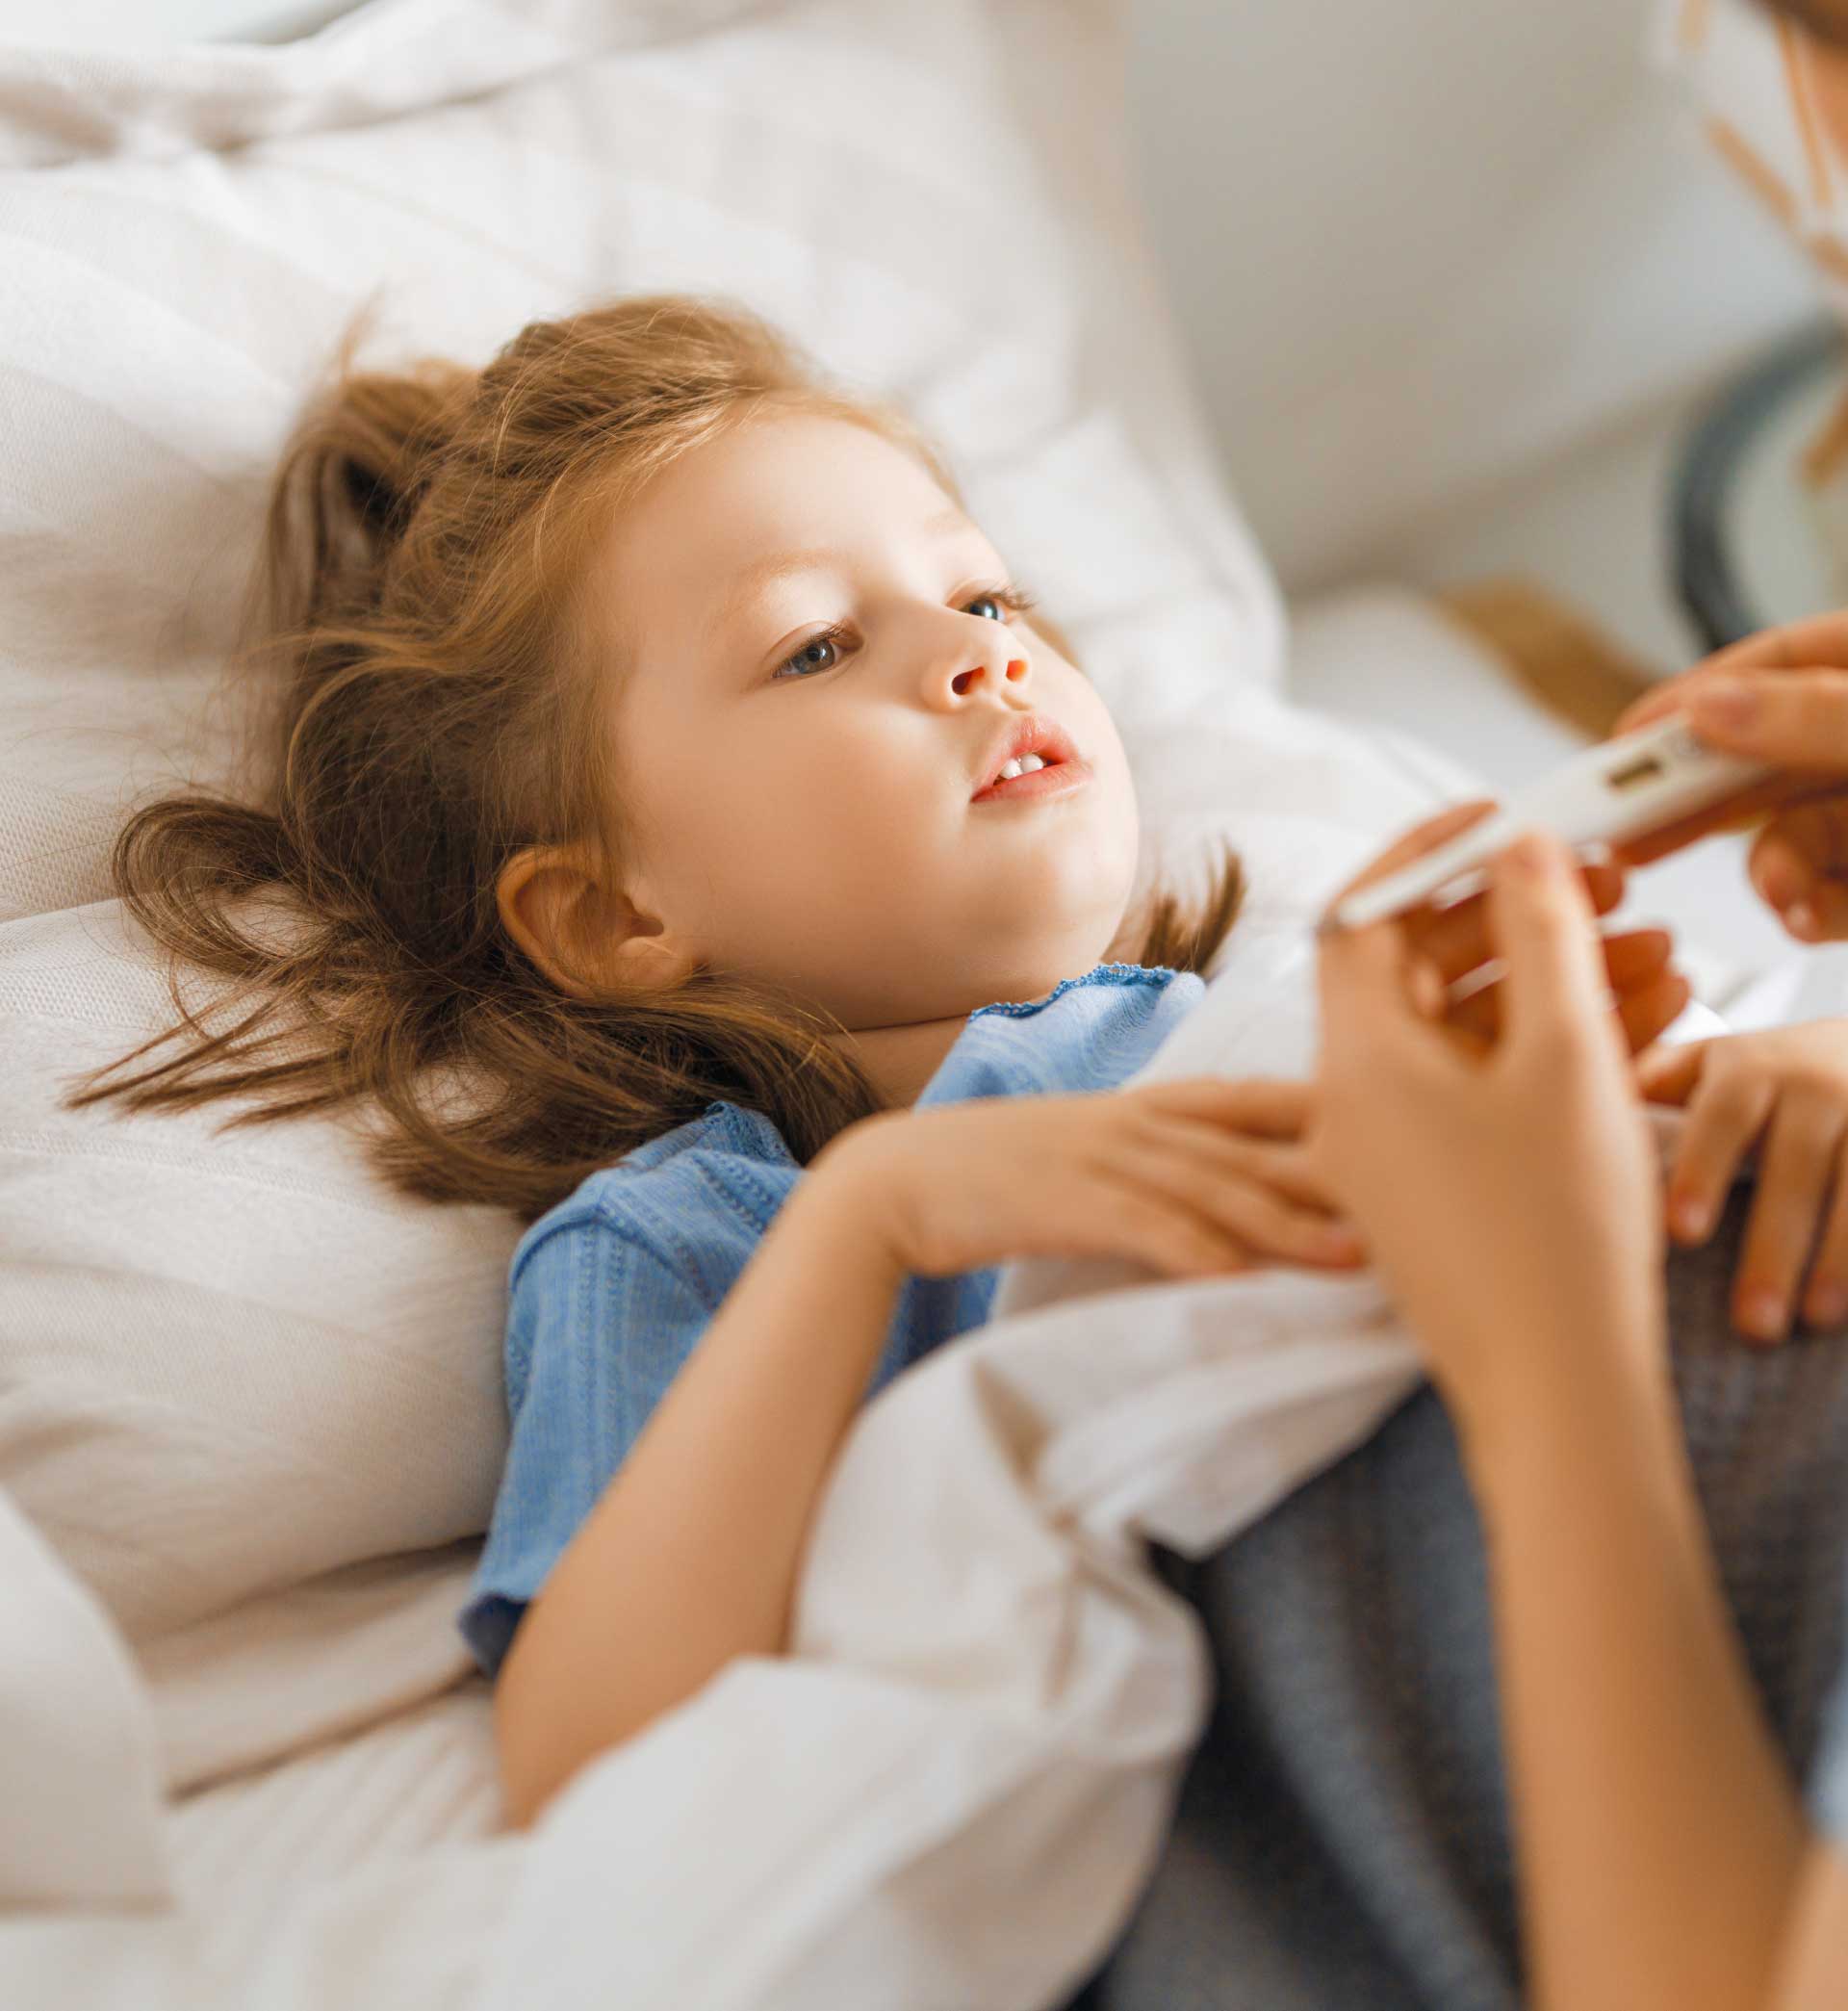 Bệnh thận mãn tính ở trẻ em: Dấu hiệu cảnh báo, triệu chứng, nguyên nhân và cách điều trị! - Ảnh 3